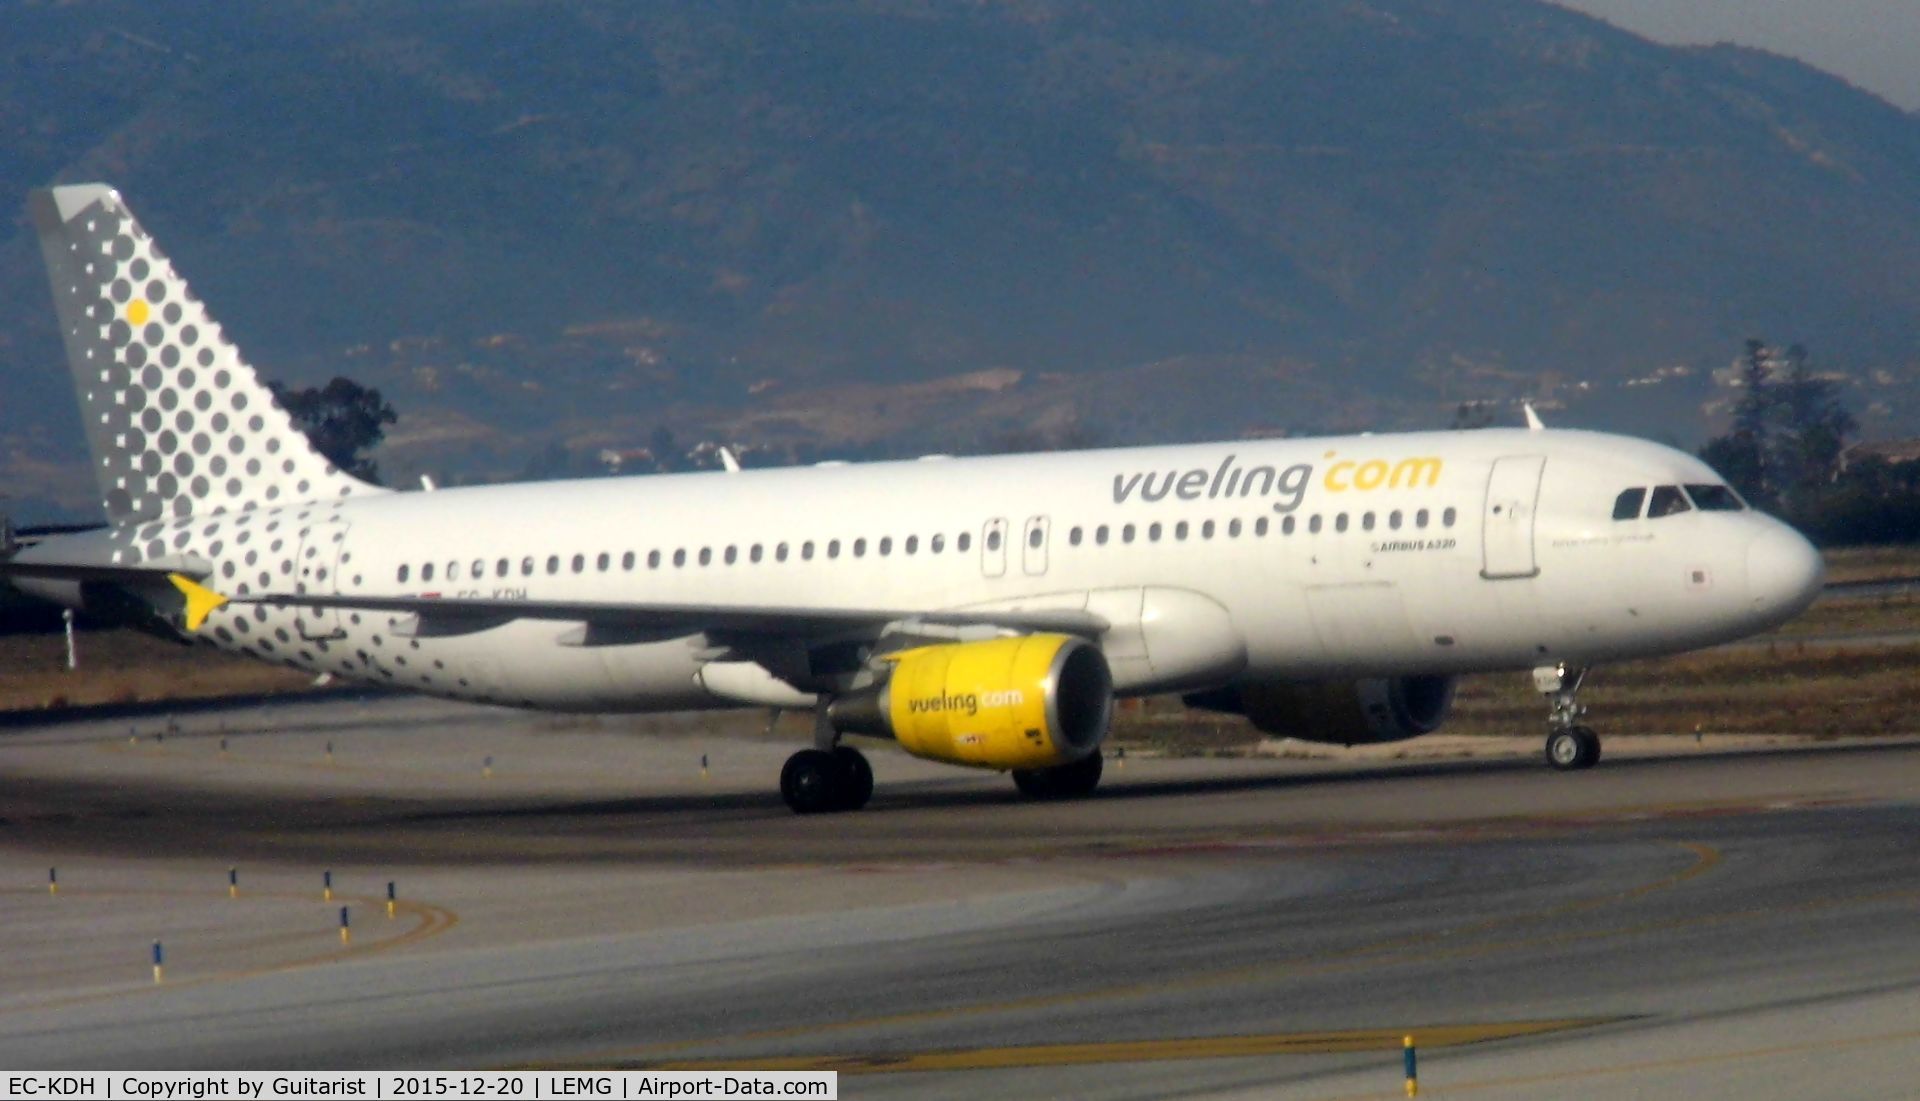 EC-KDH, 2007 Airbus A320-214 C/N 3083, At Malaga